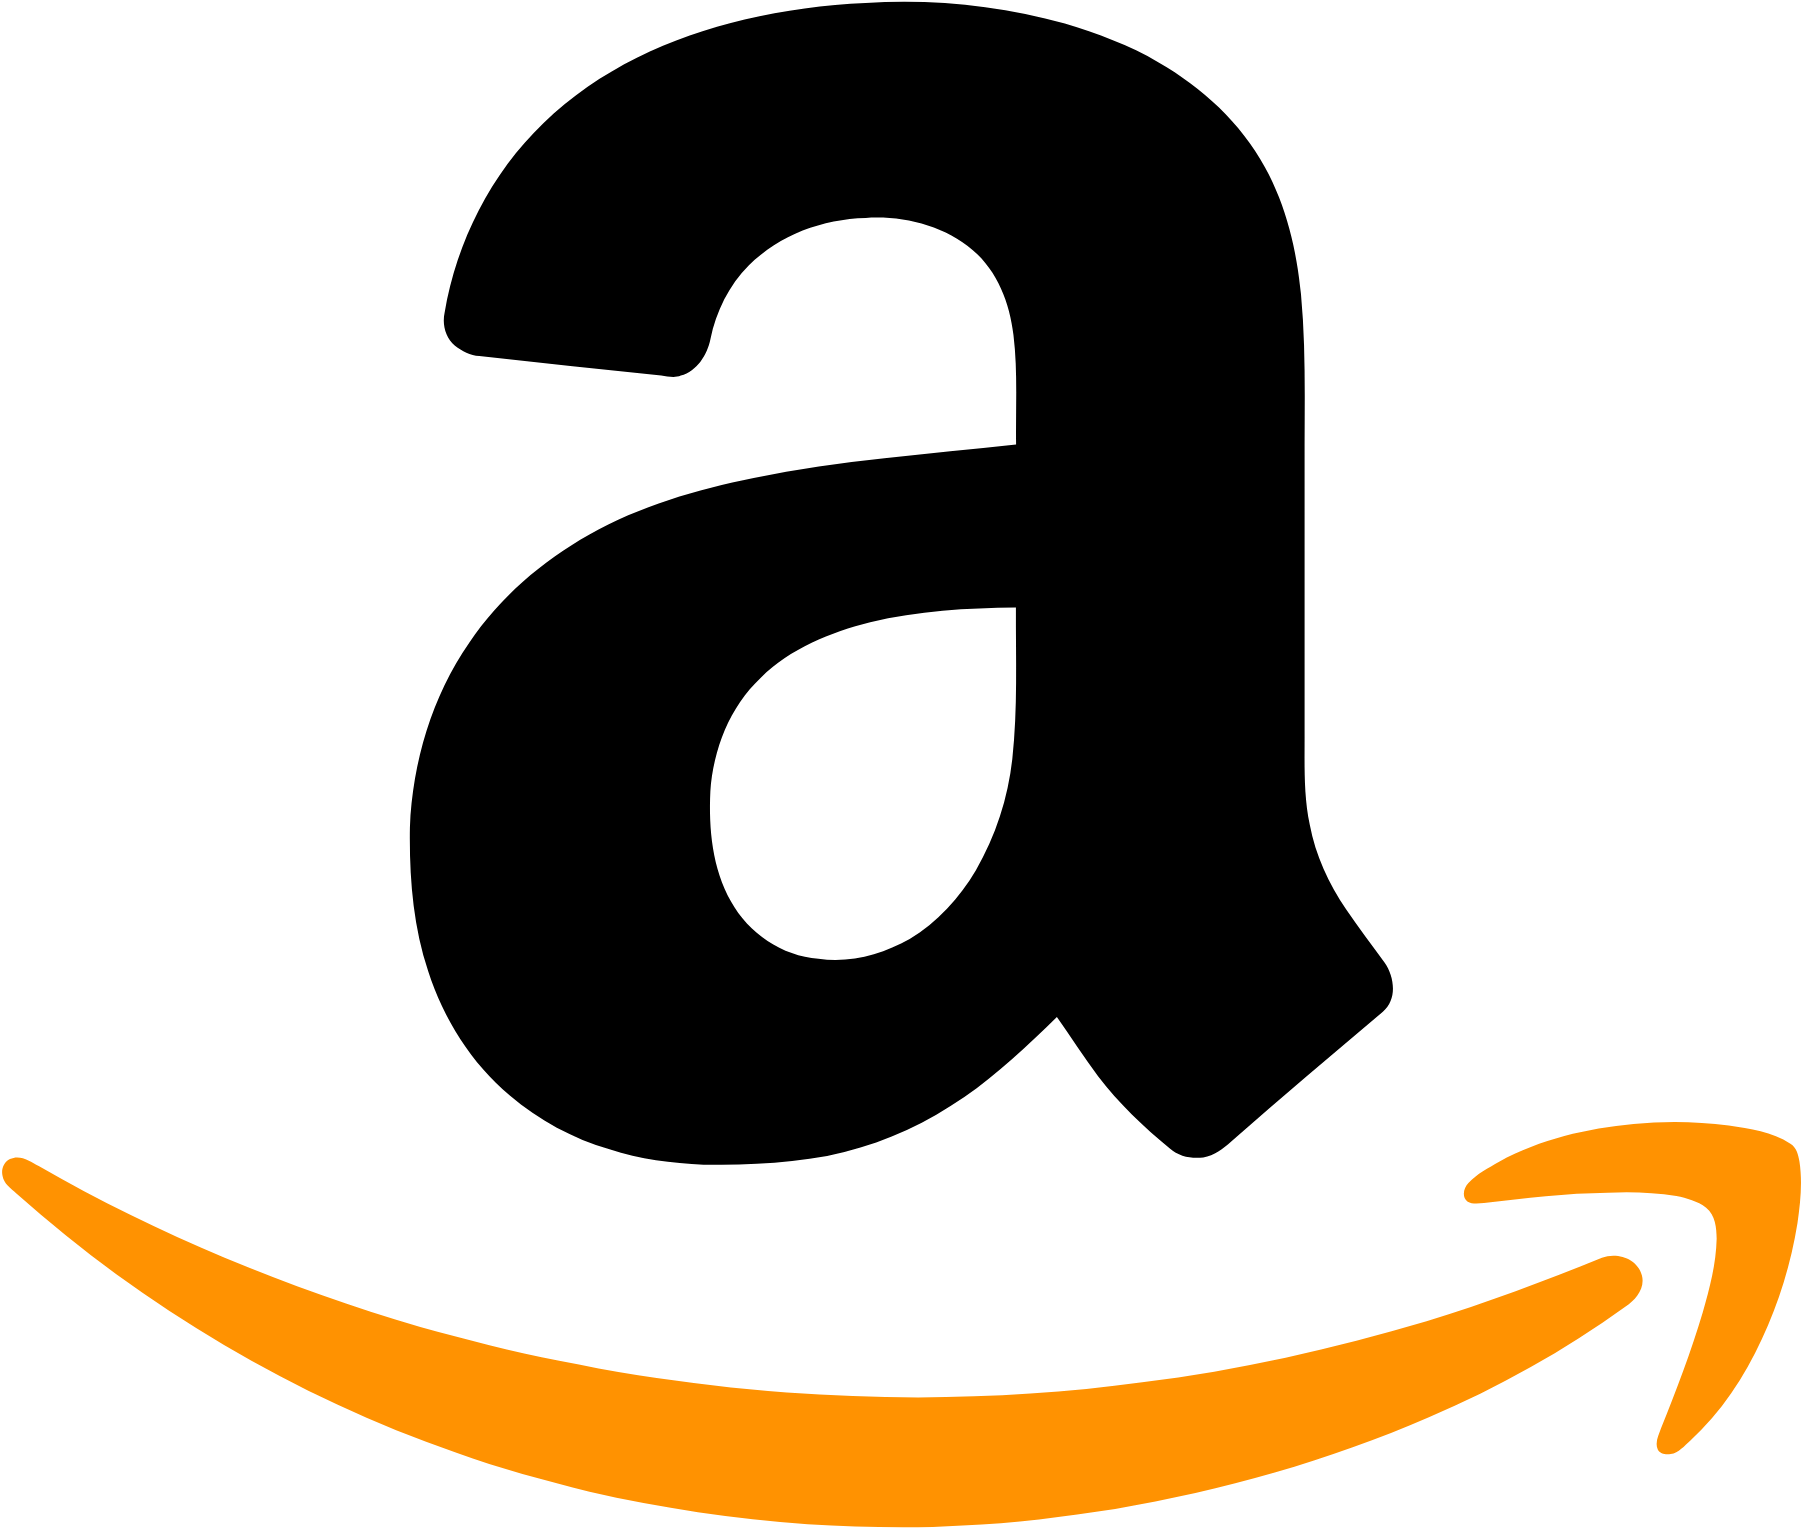 Logo de Amazon aux formats PNG transparent et SVG vectorisé